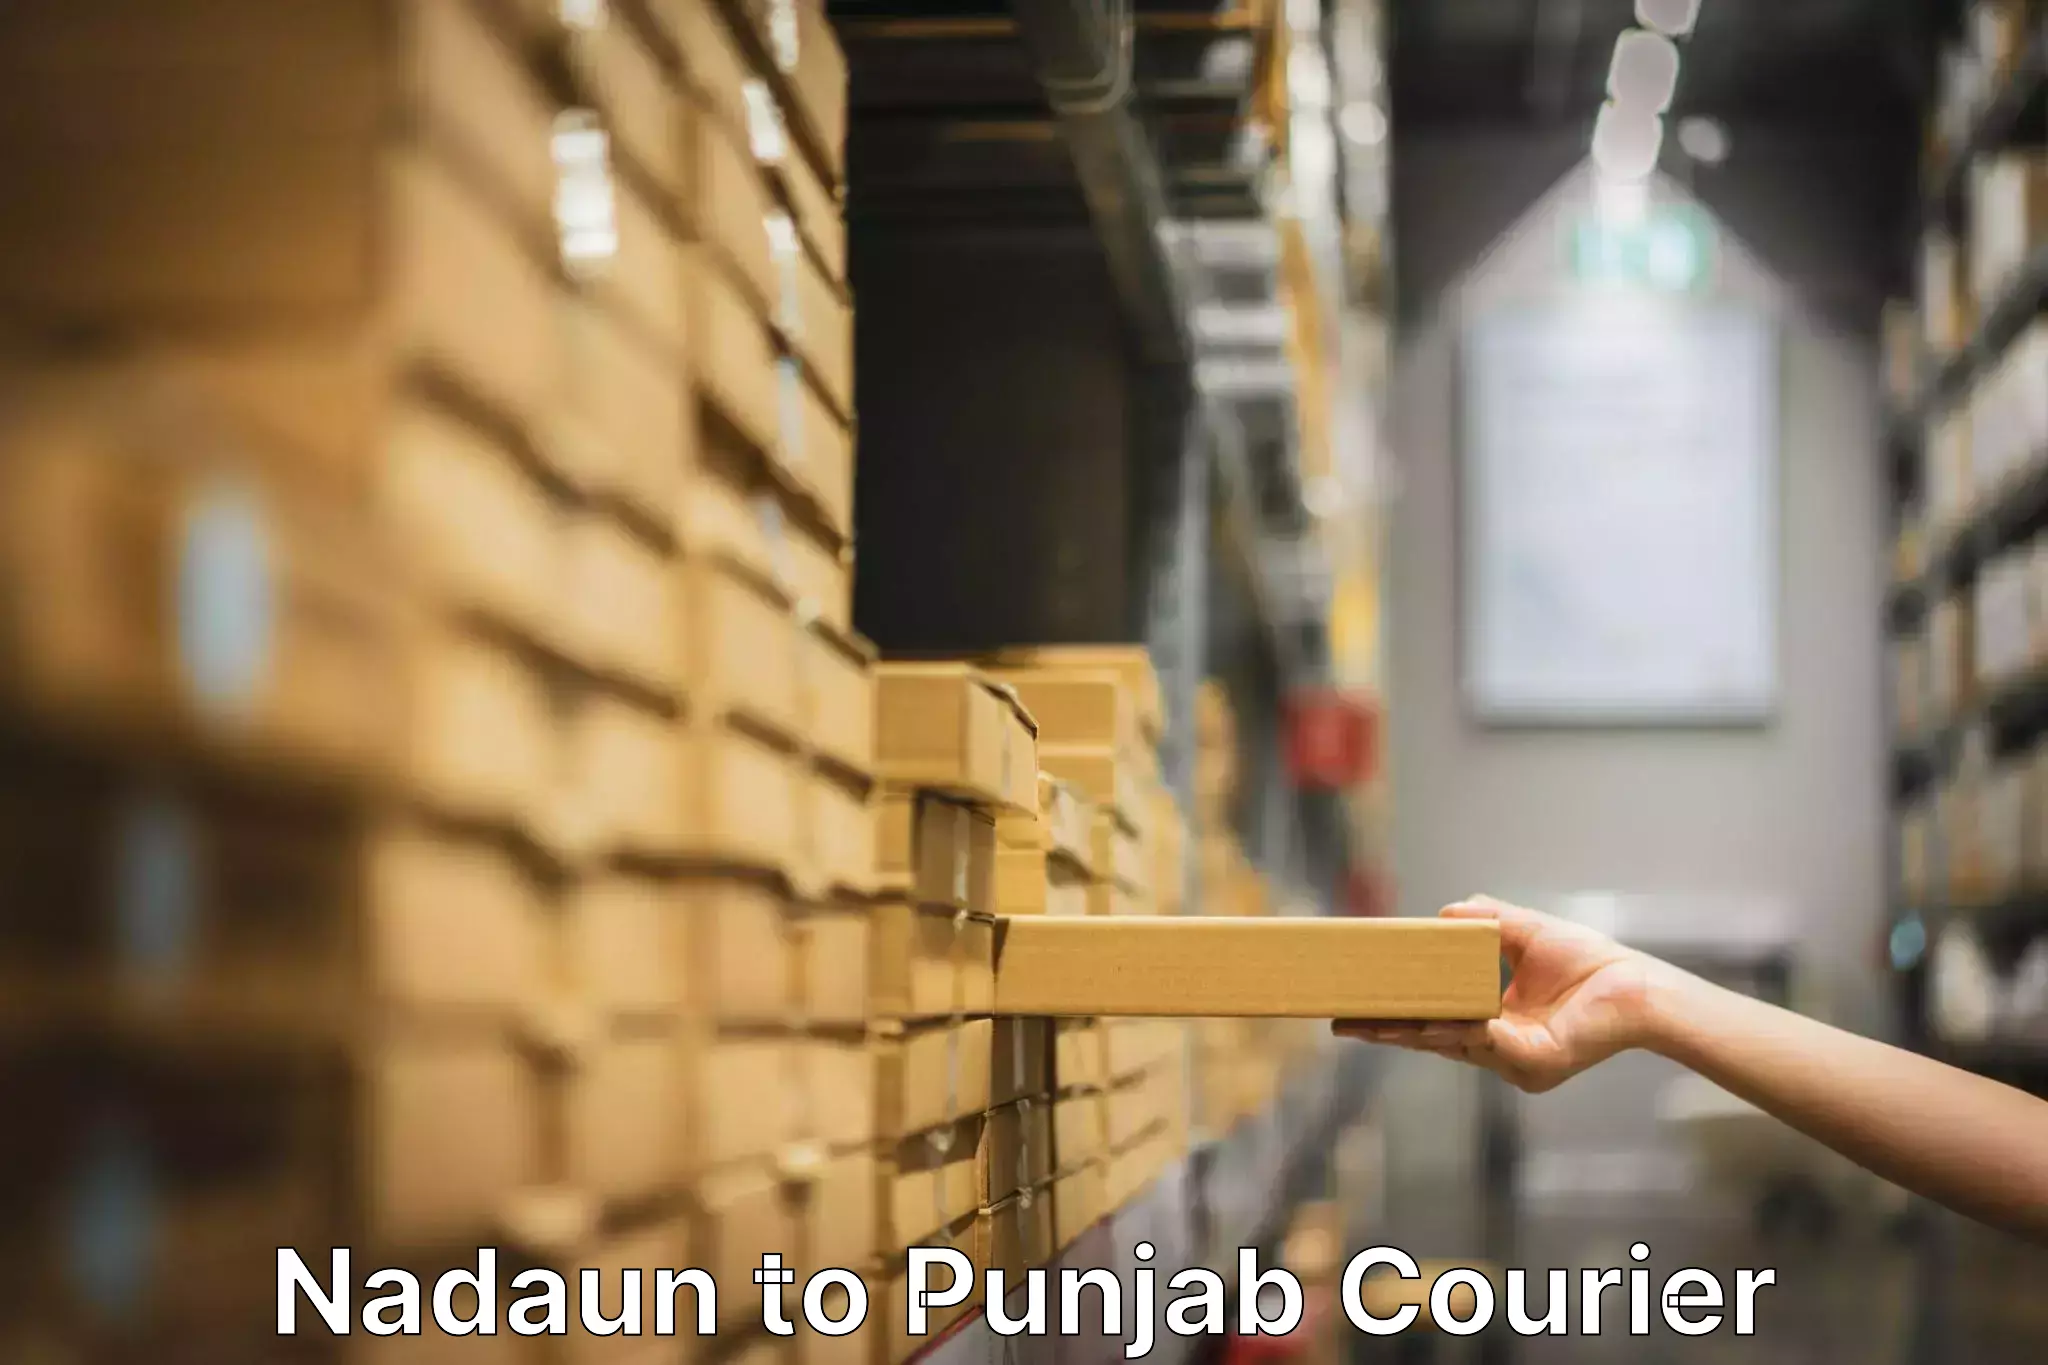 Furniture transport and storage Nadaun to Punjab